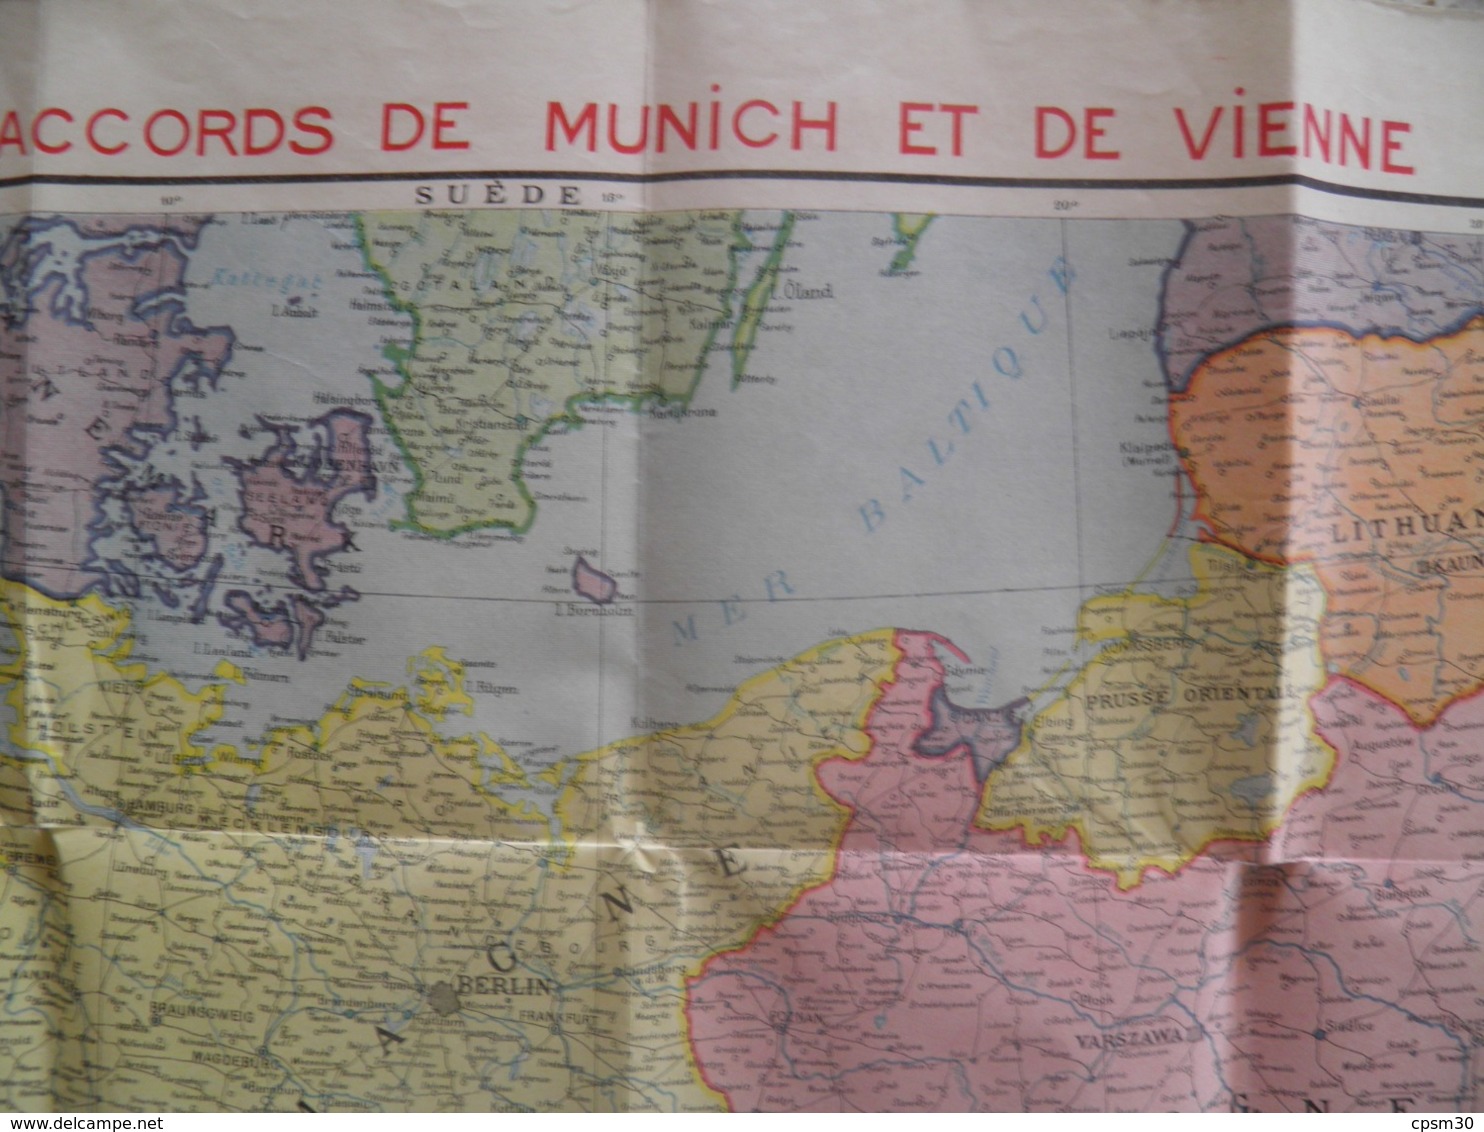 Carte Routière Europe Centrale Après Les Accords De Munnich Et Vienne (pub De Sirop Delabarre) 75 X 105 Cm - Roadmaps